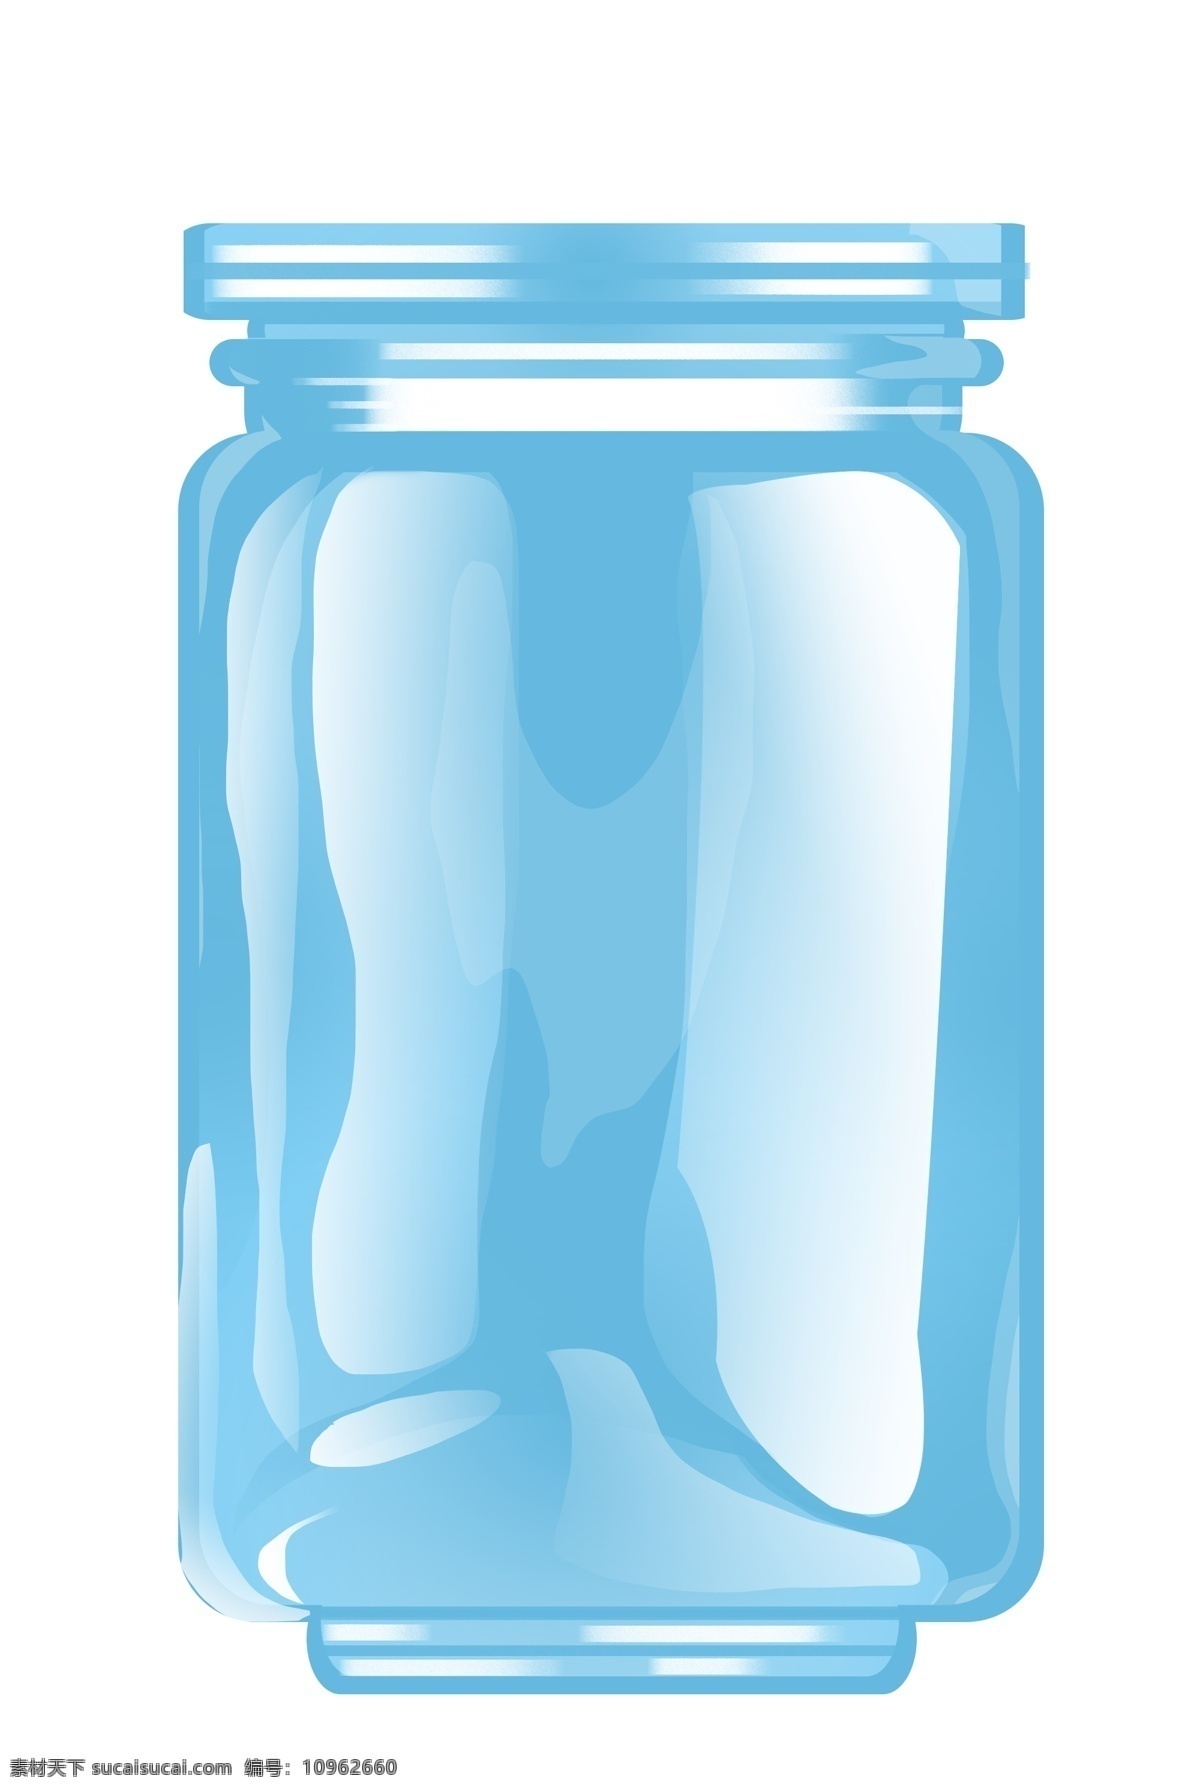 蓝色 玻璃 瓶子 插画 玻璃瓶子 蓝色玻璃瓶子 包装瓶子插画 透明玻璃瓶子 宽口径瓶子 瓶子装饰插画